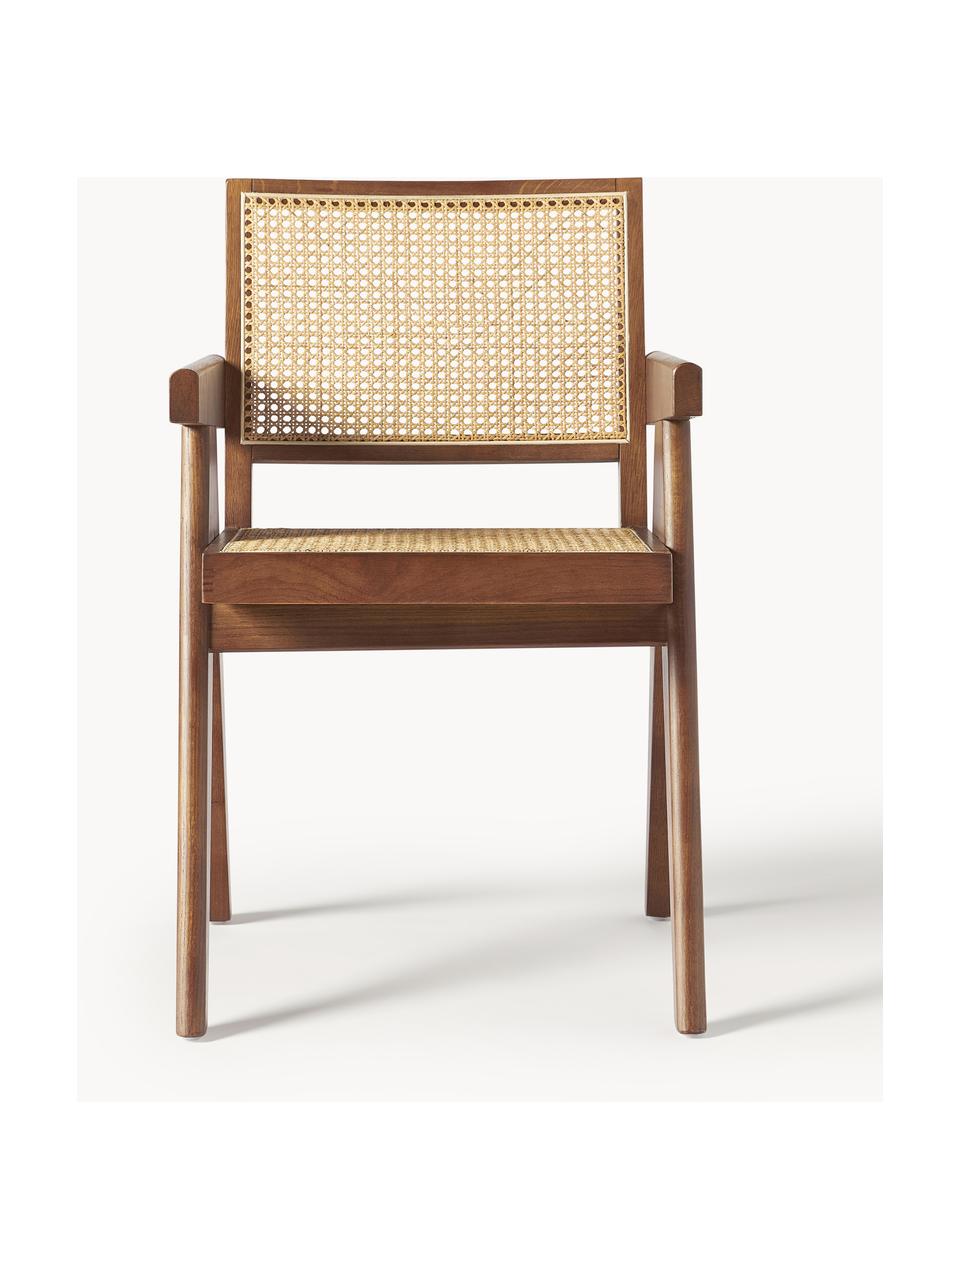 Chaise à accoudoirs en cannage Sissi, Bois de chêne foncé, cannage beige clair, larg. 52 x prof. 58 cm